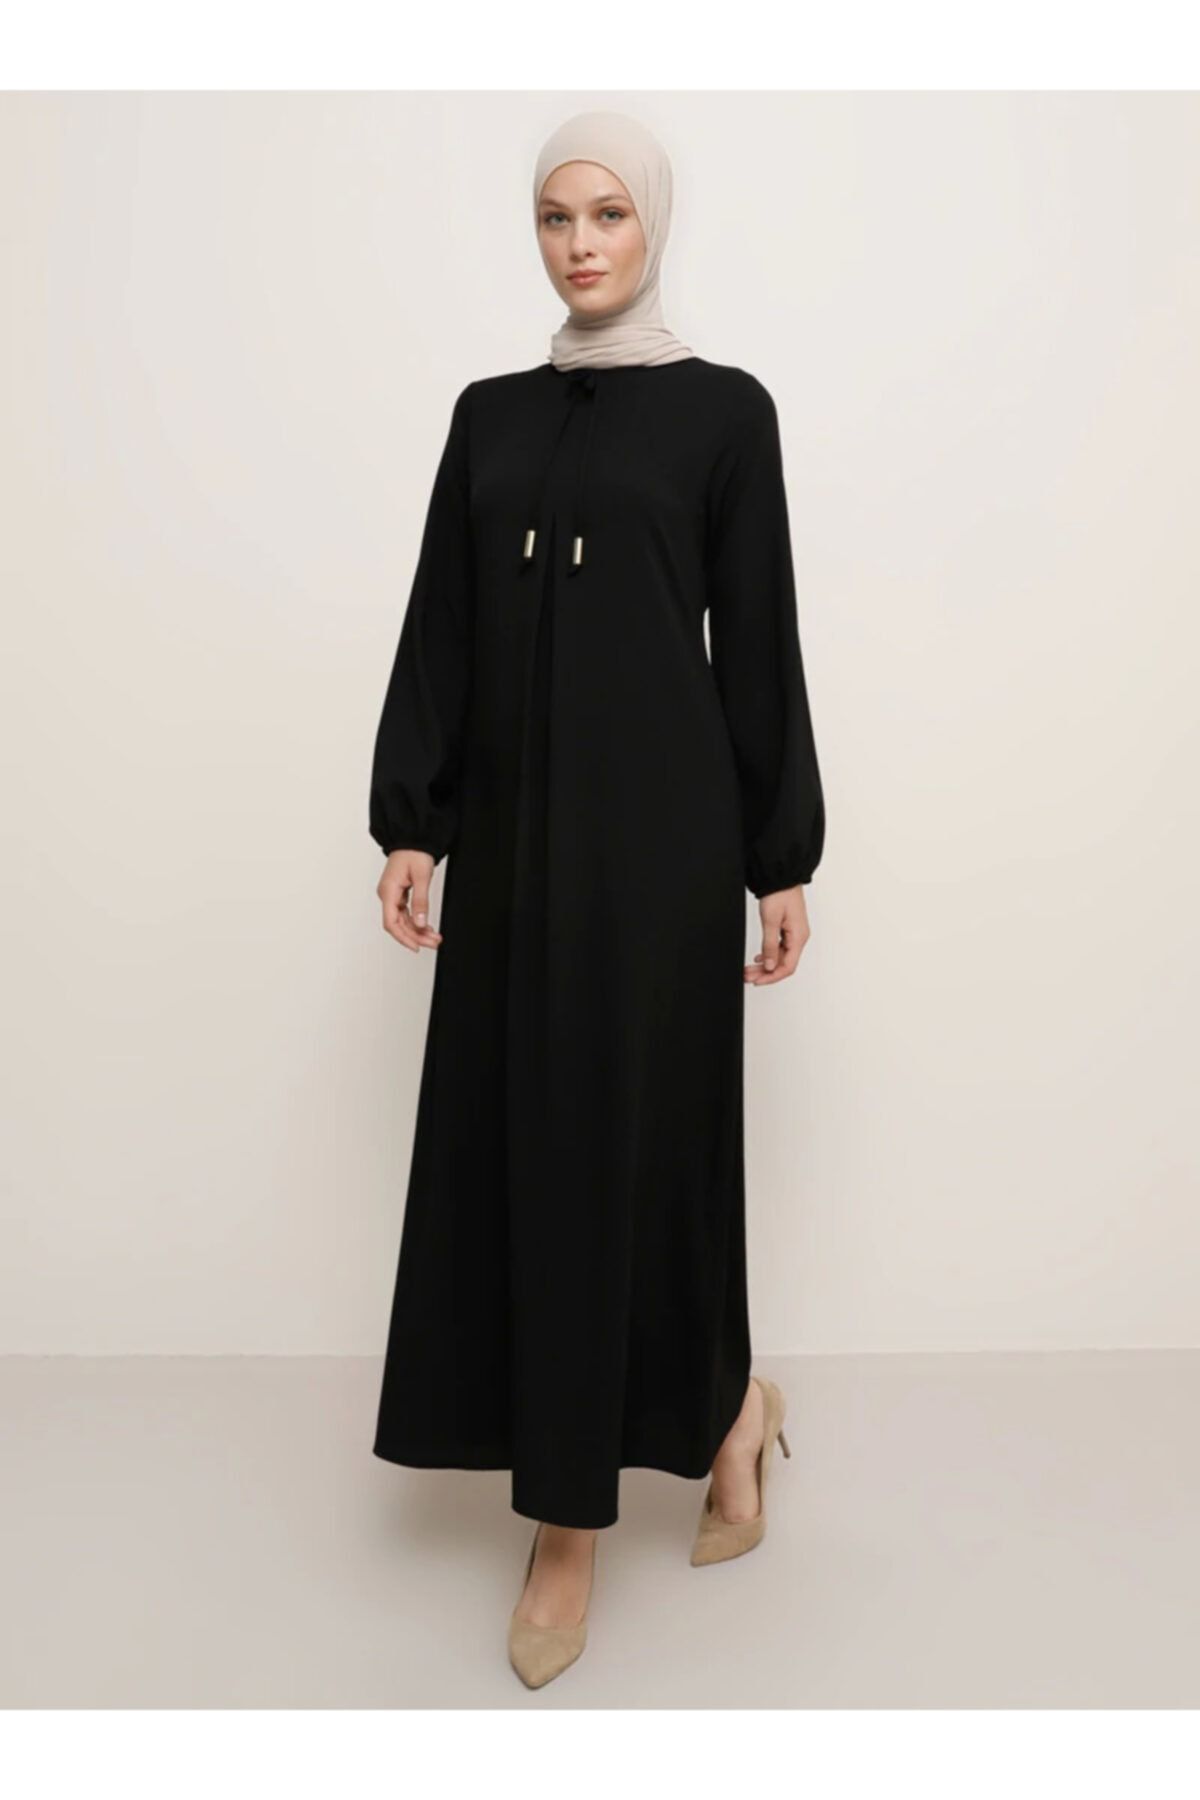 Tavin Kadın Siyah A Pile Fiyonk Yaka Detaylı Elbise 1525114